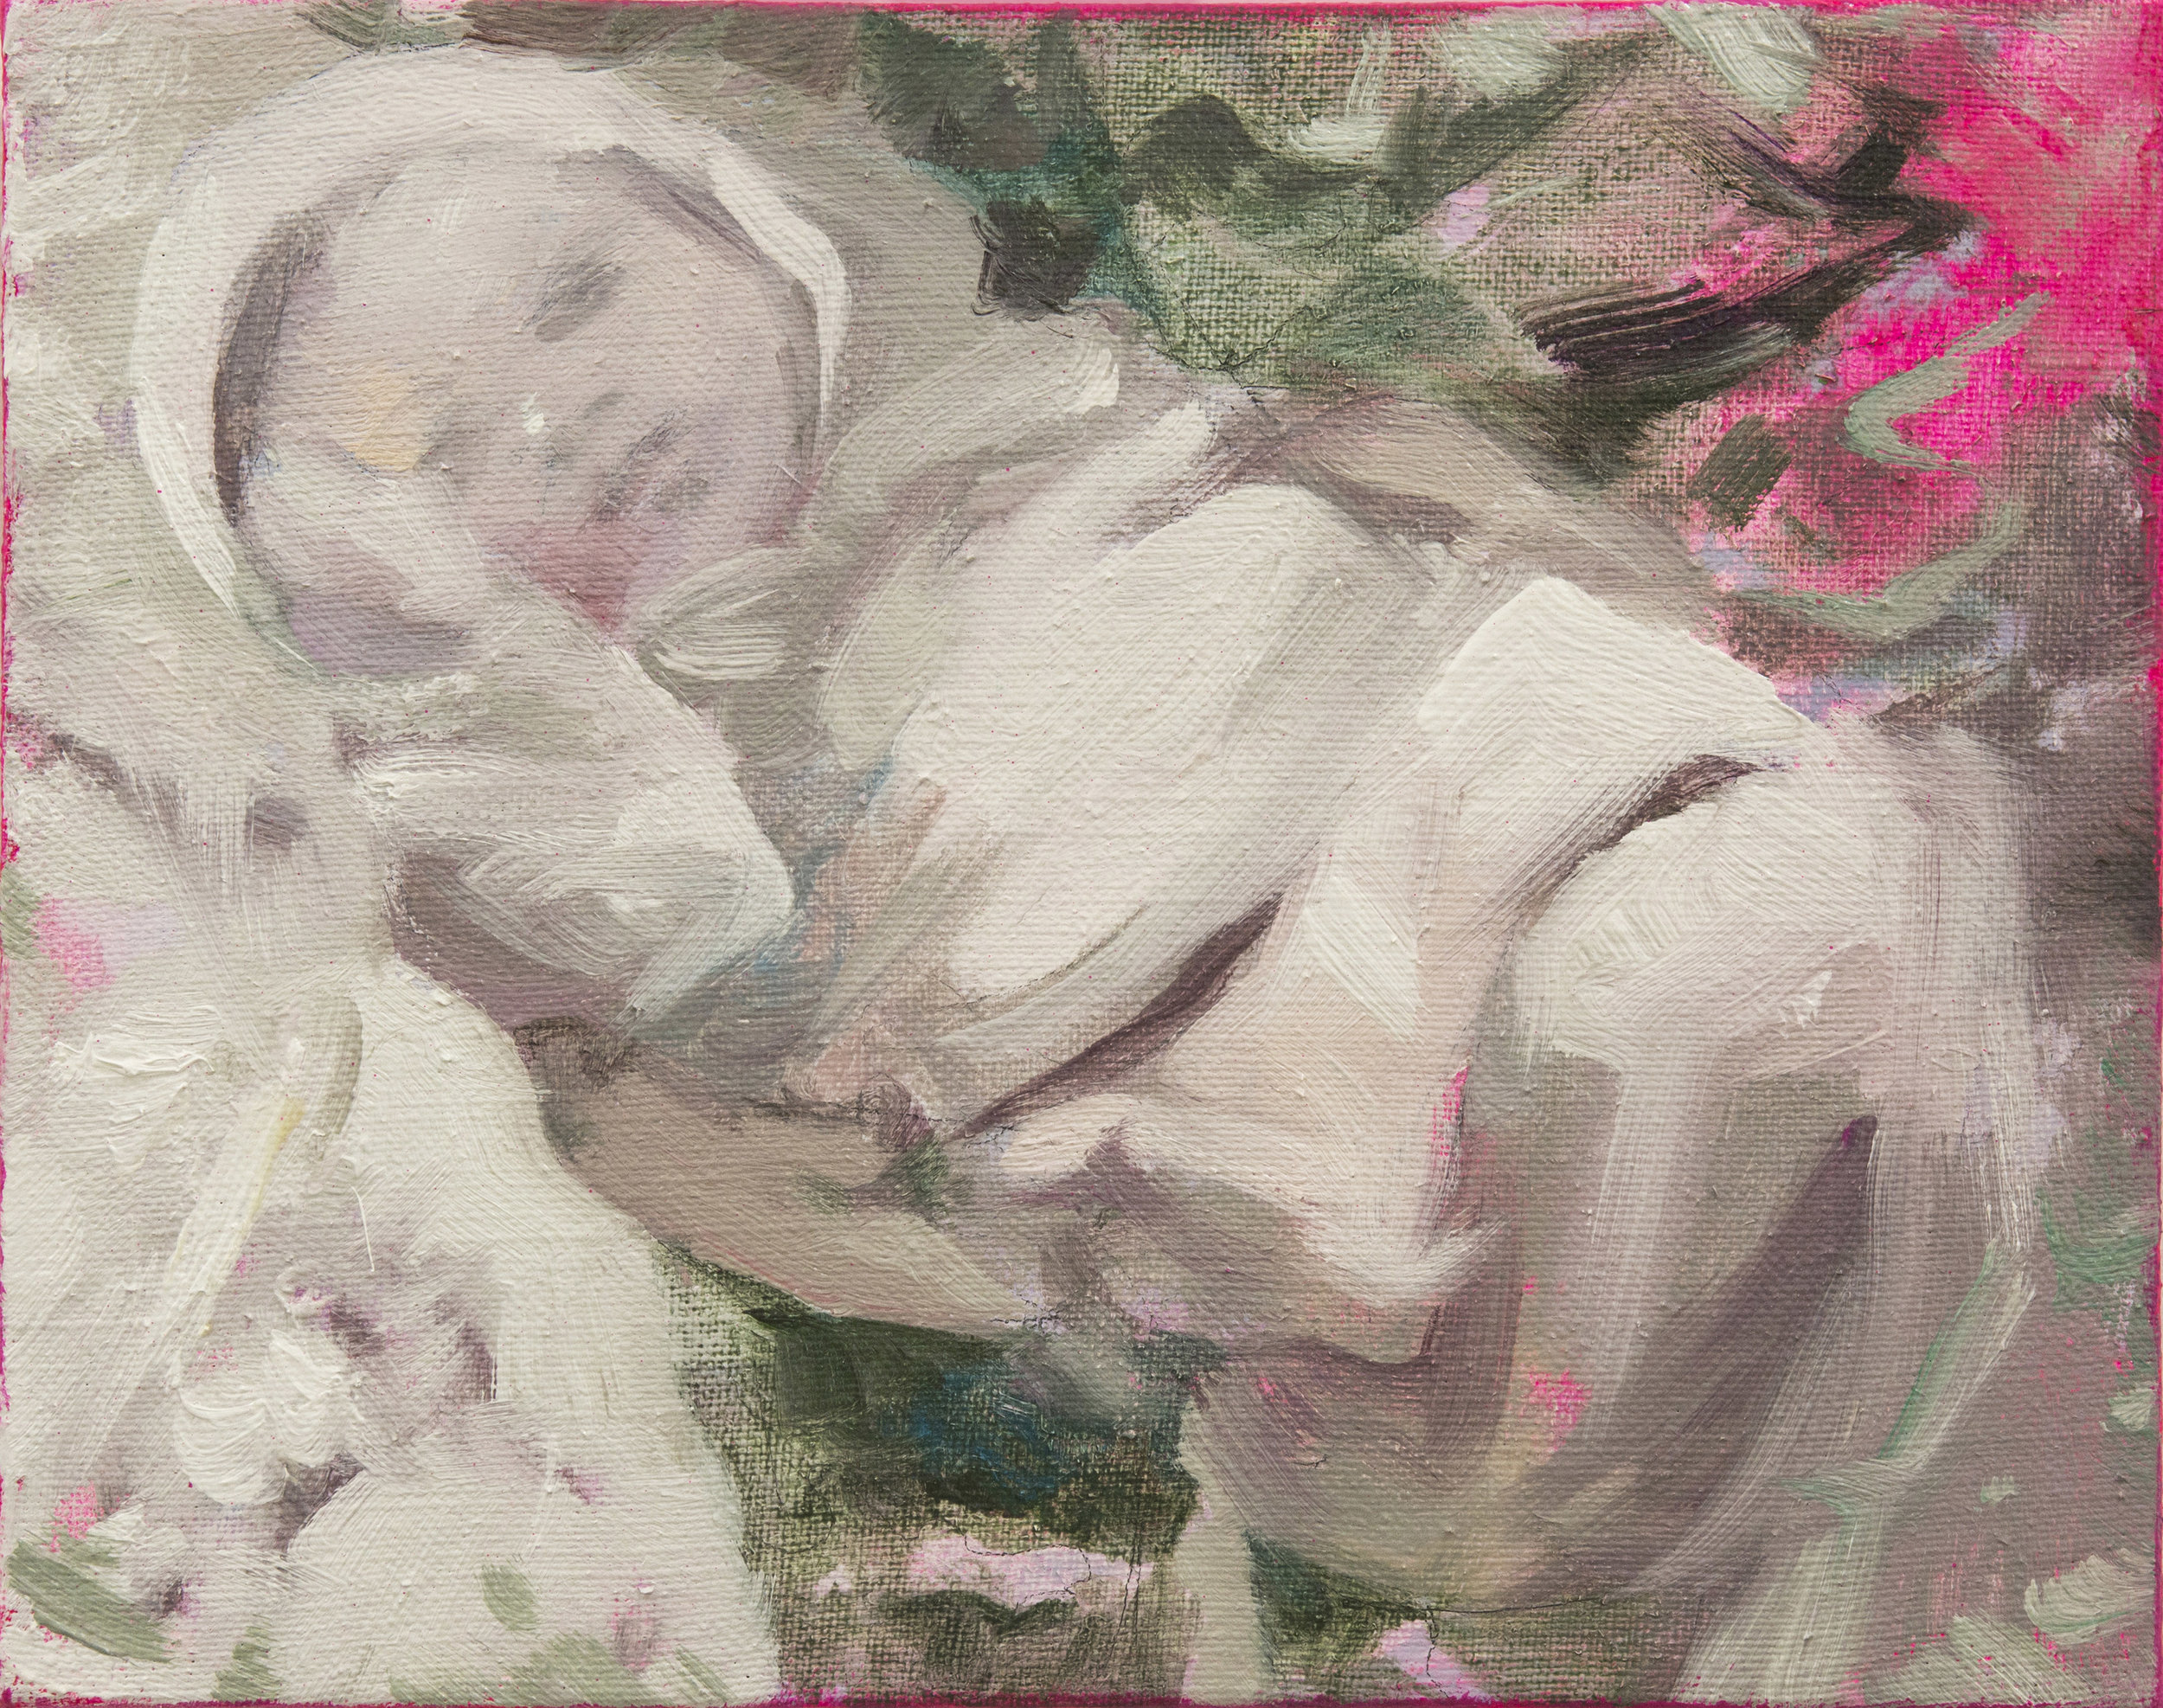 Lullaby1 24x30cm 2015 Oil on canvas .jpg